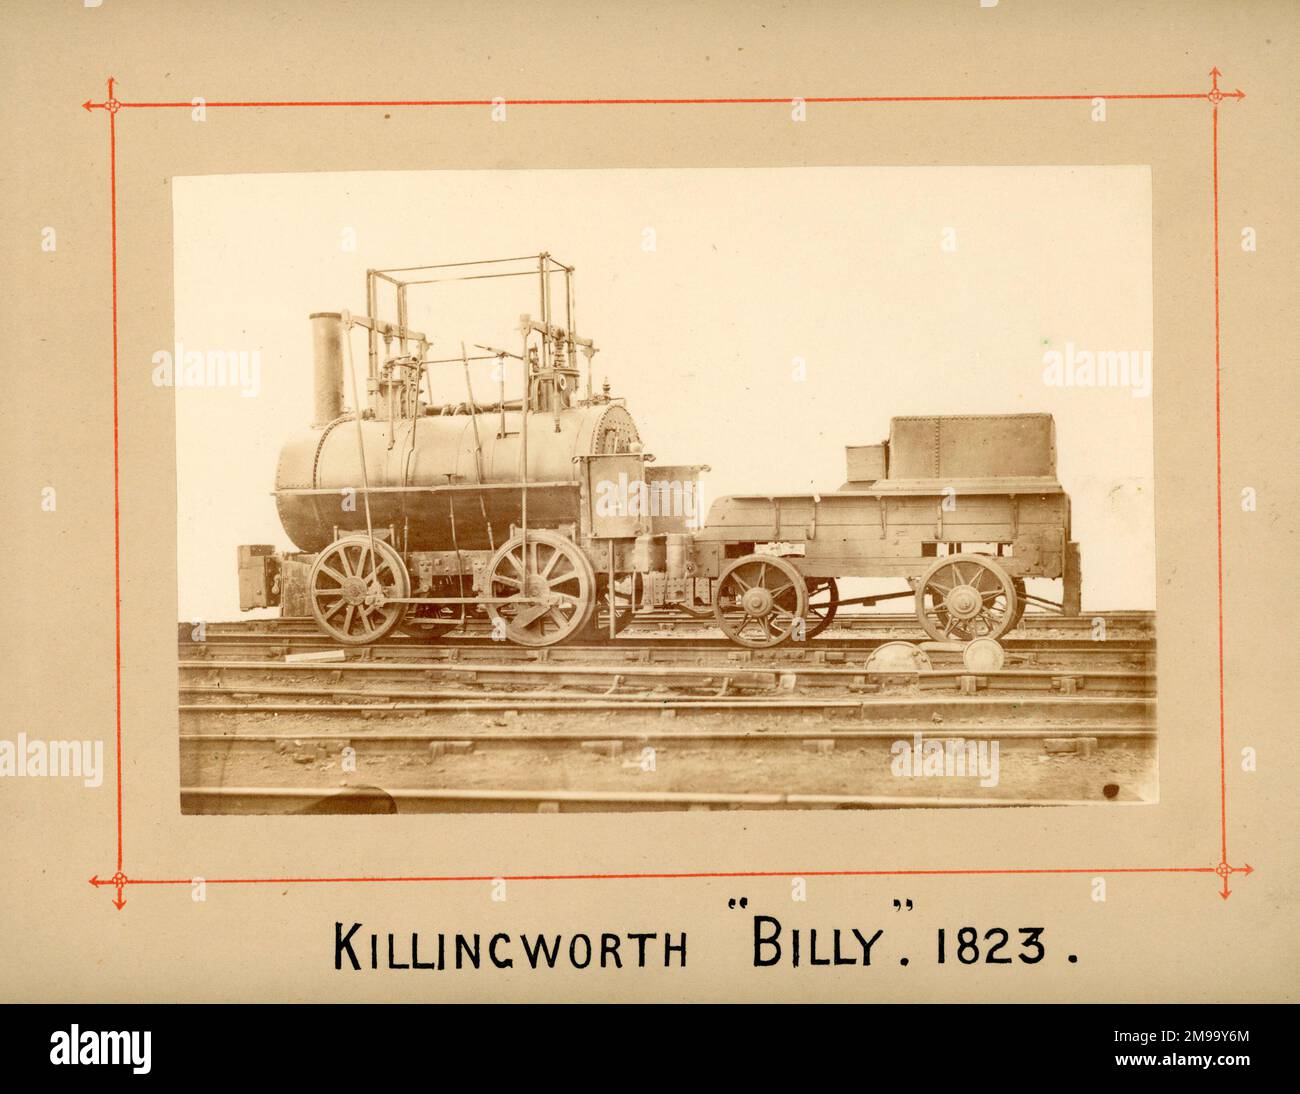 Der alte Killingworth 4-Radmotor von George Stephenson, 1823. Gelistet in RE Bleasdales Locomotive Engines Katalog, Eintrag 1274. Zum Stephenson-Strafvollzug. Stockfoto